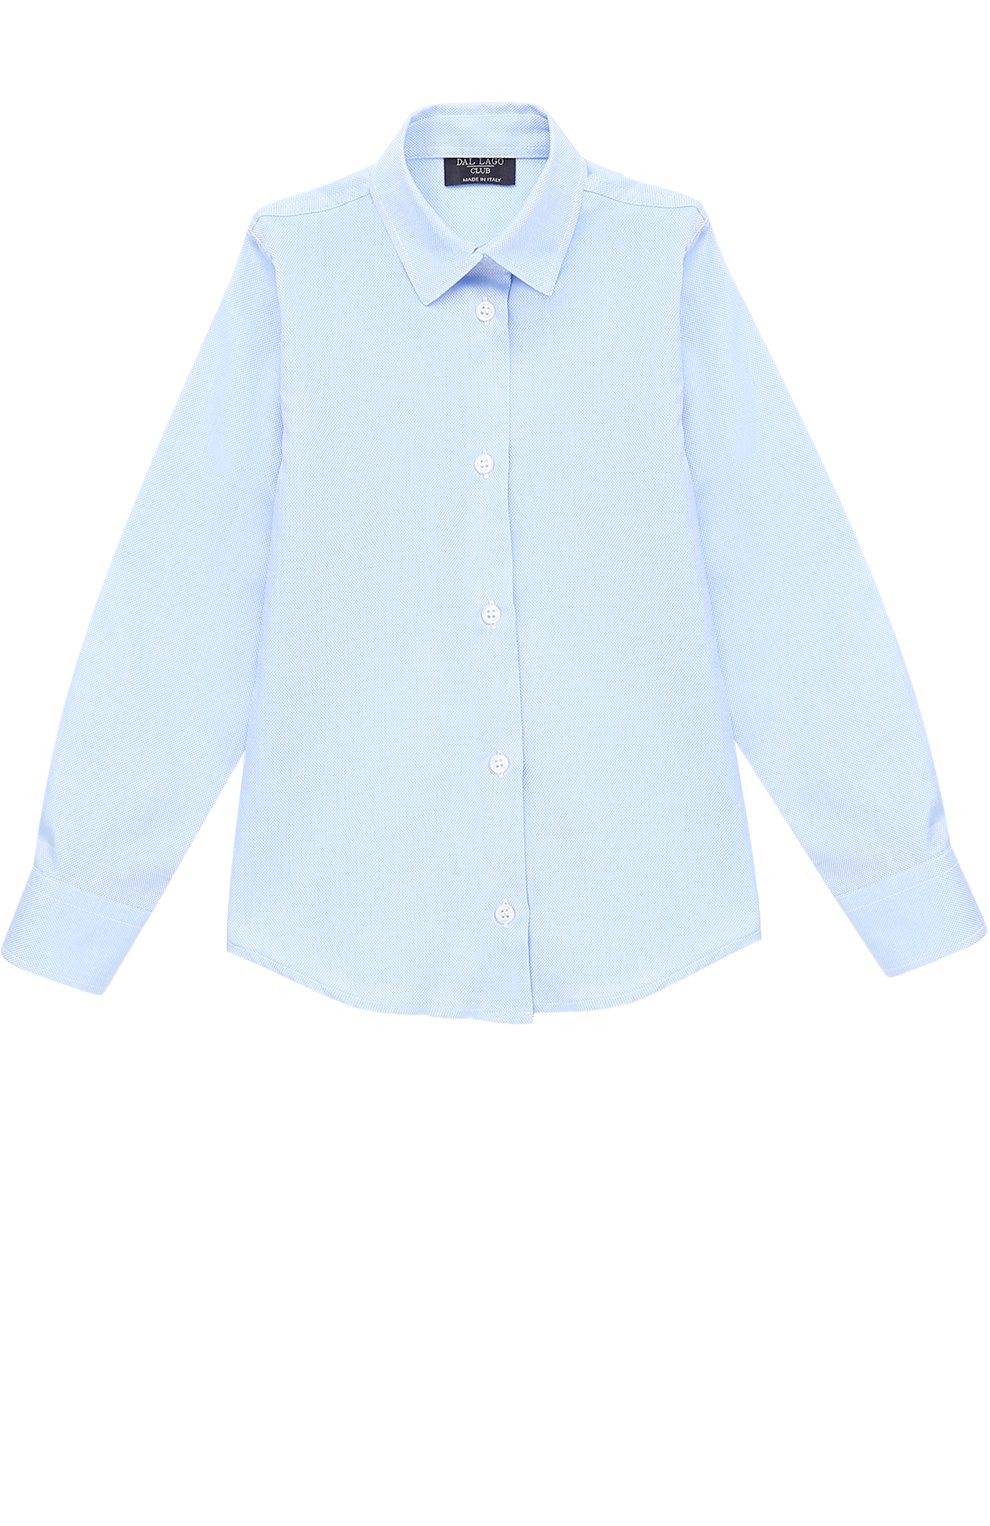 Рубашки Dal Lago, Хлопковая рубашка прямого кроя Dal Lago, Италия, Голубой, Хлопок: 100%;, 2297027  - купить